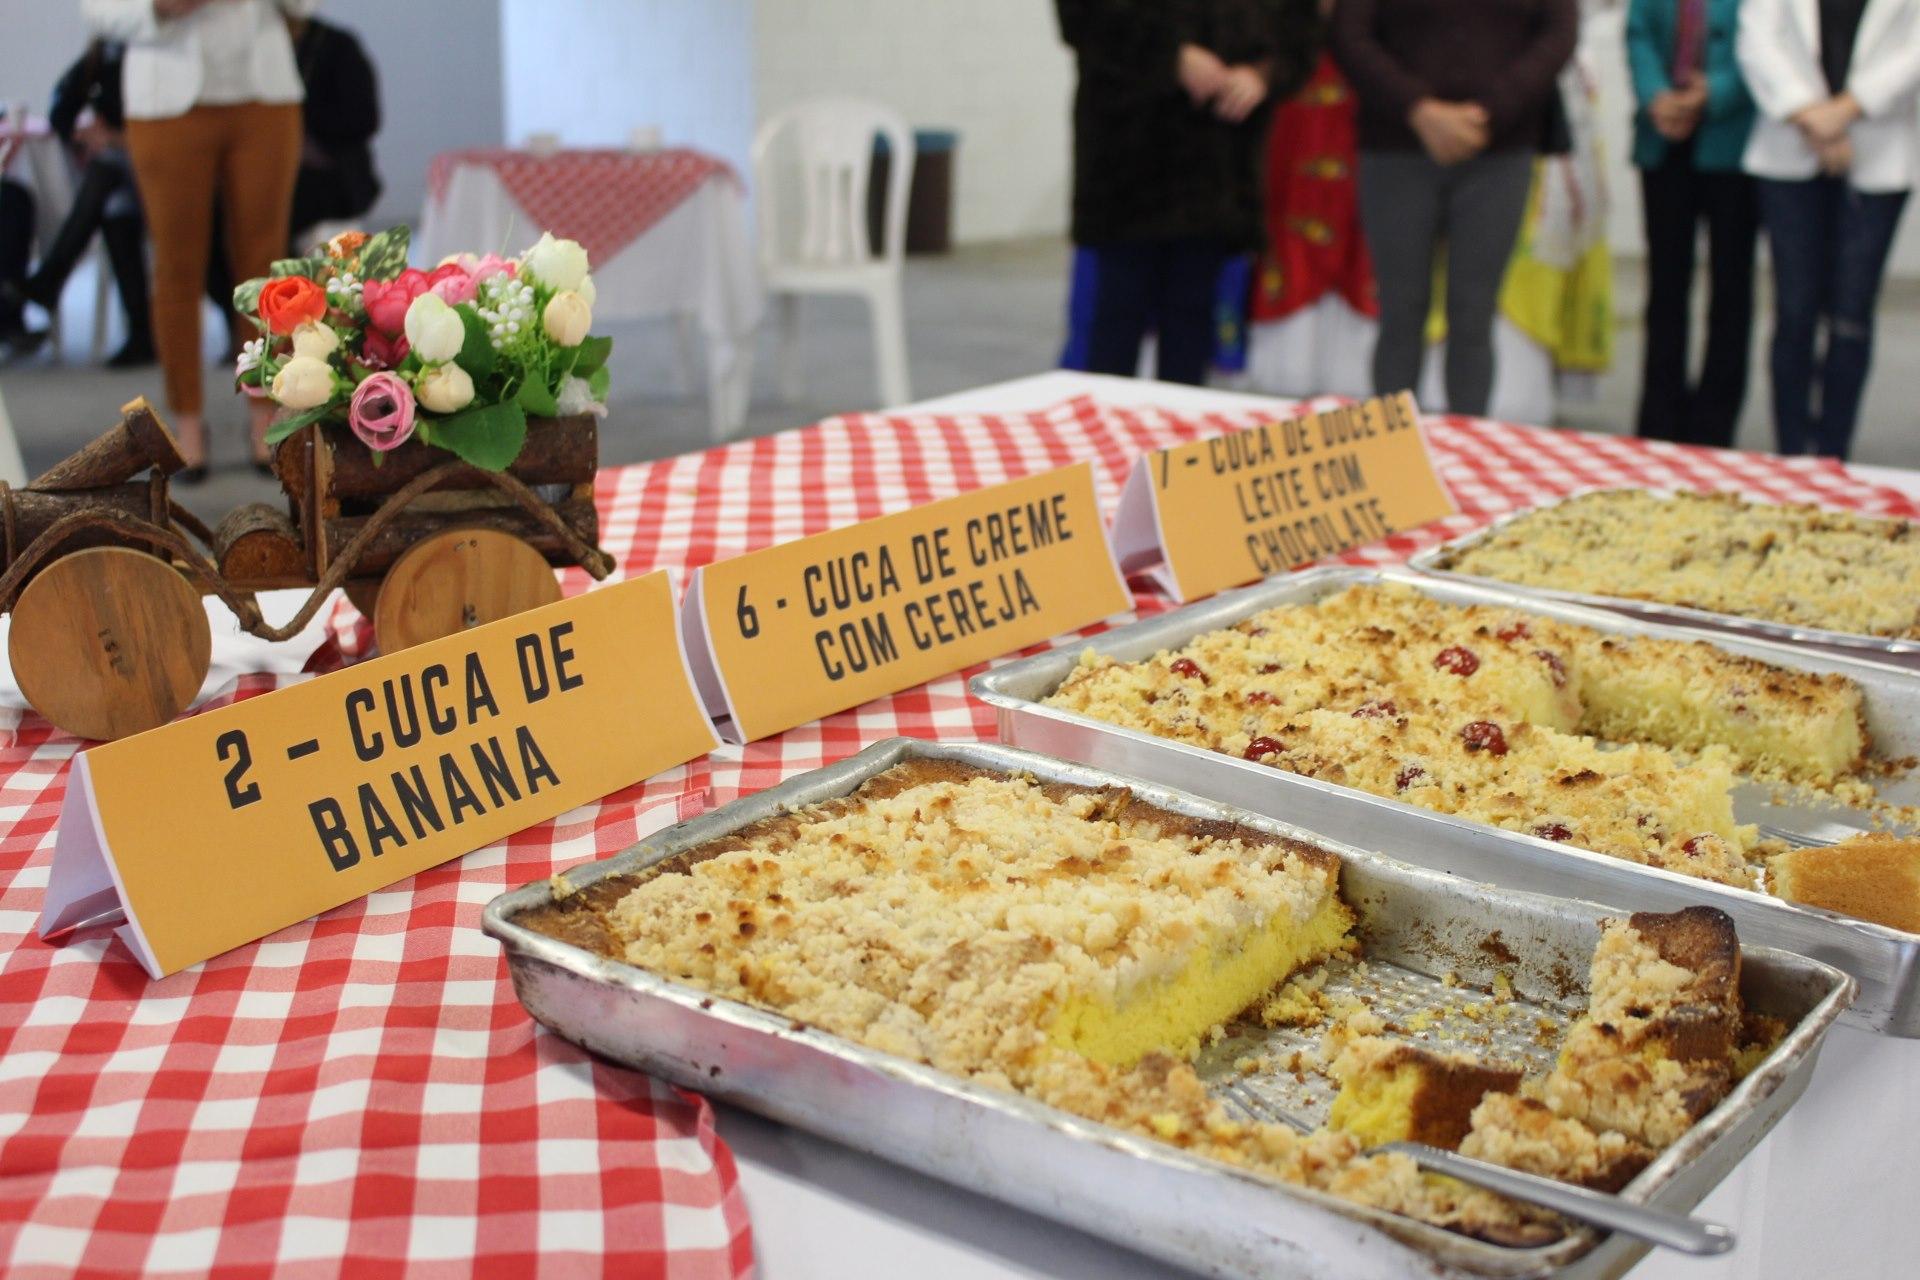 Cuca de Creme de Cereja foi a vencedora do Concurso de Cucas de Vidal Ramos